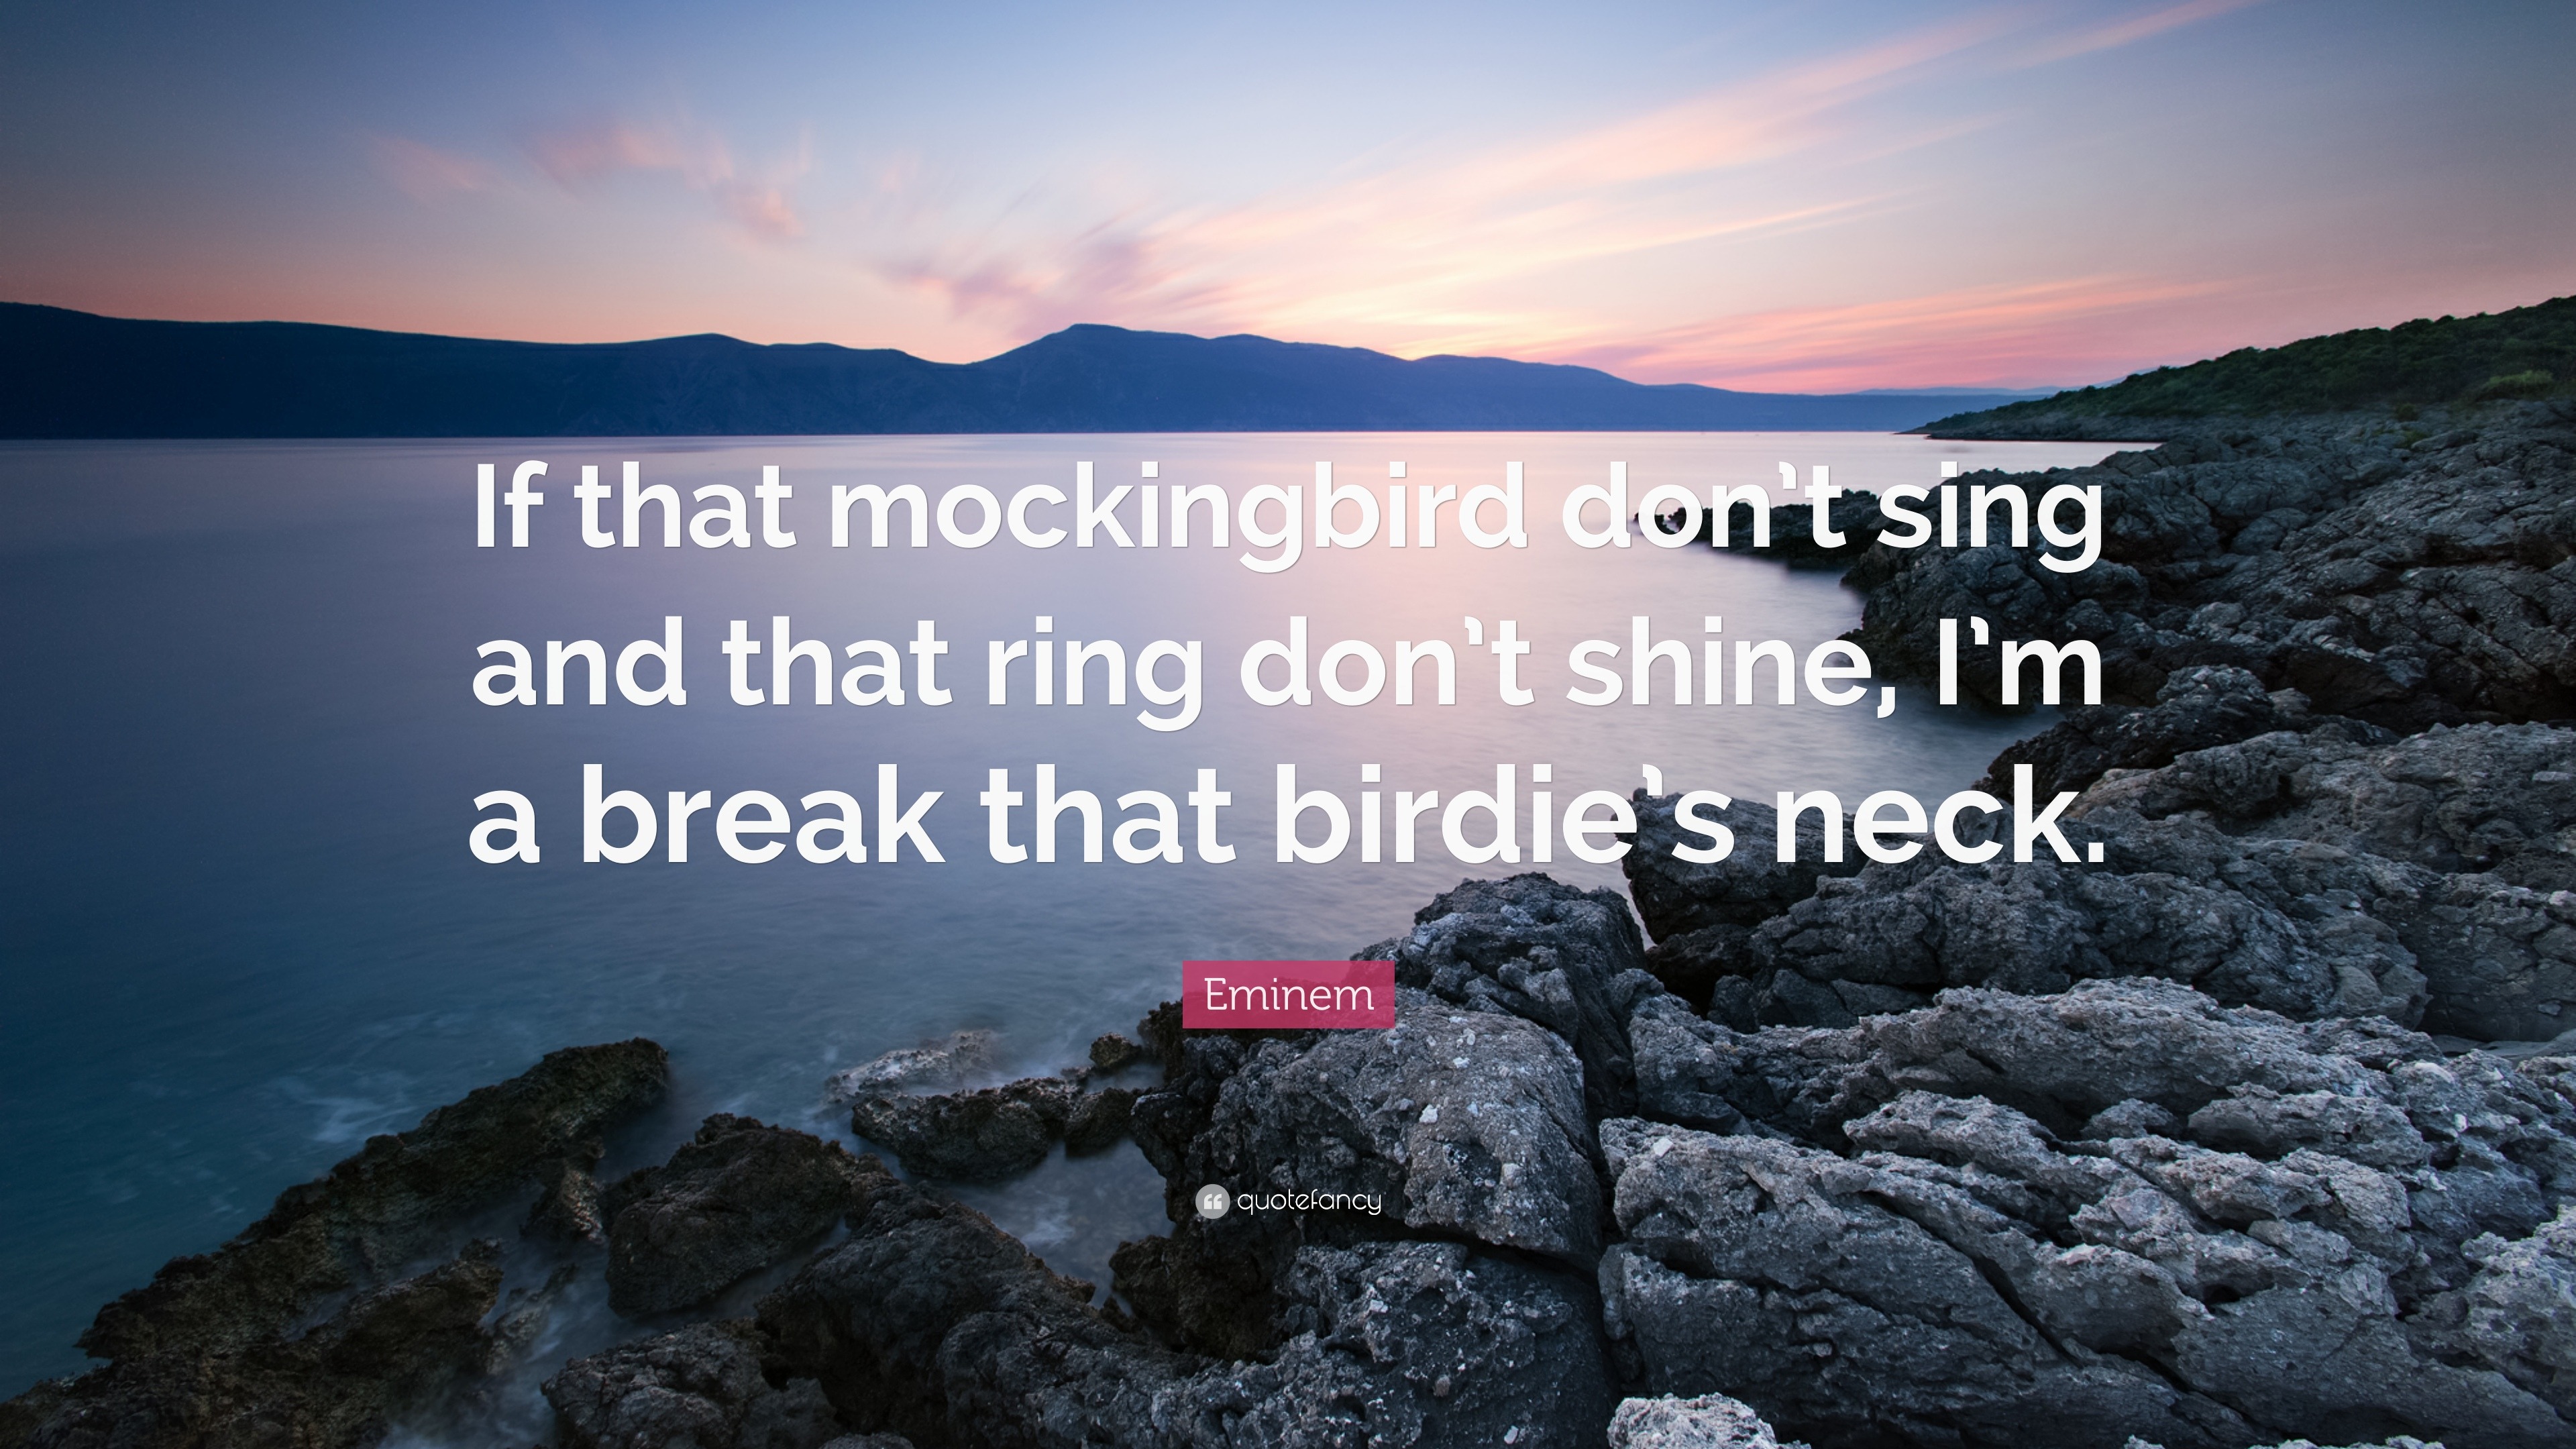 Mockingbird by eminem - Imgflip